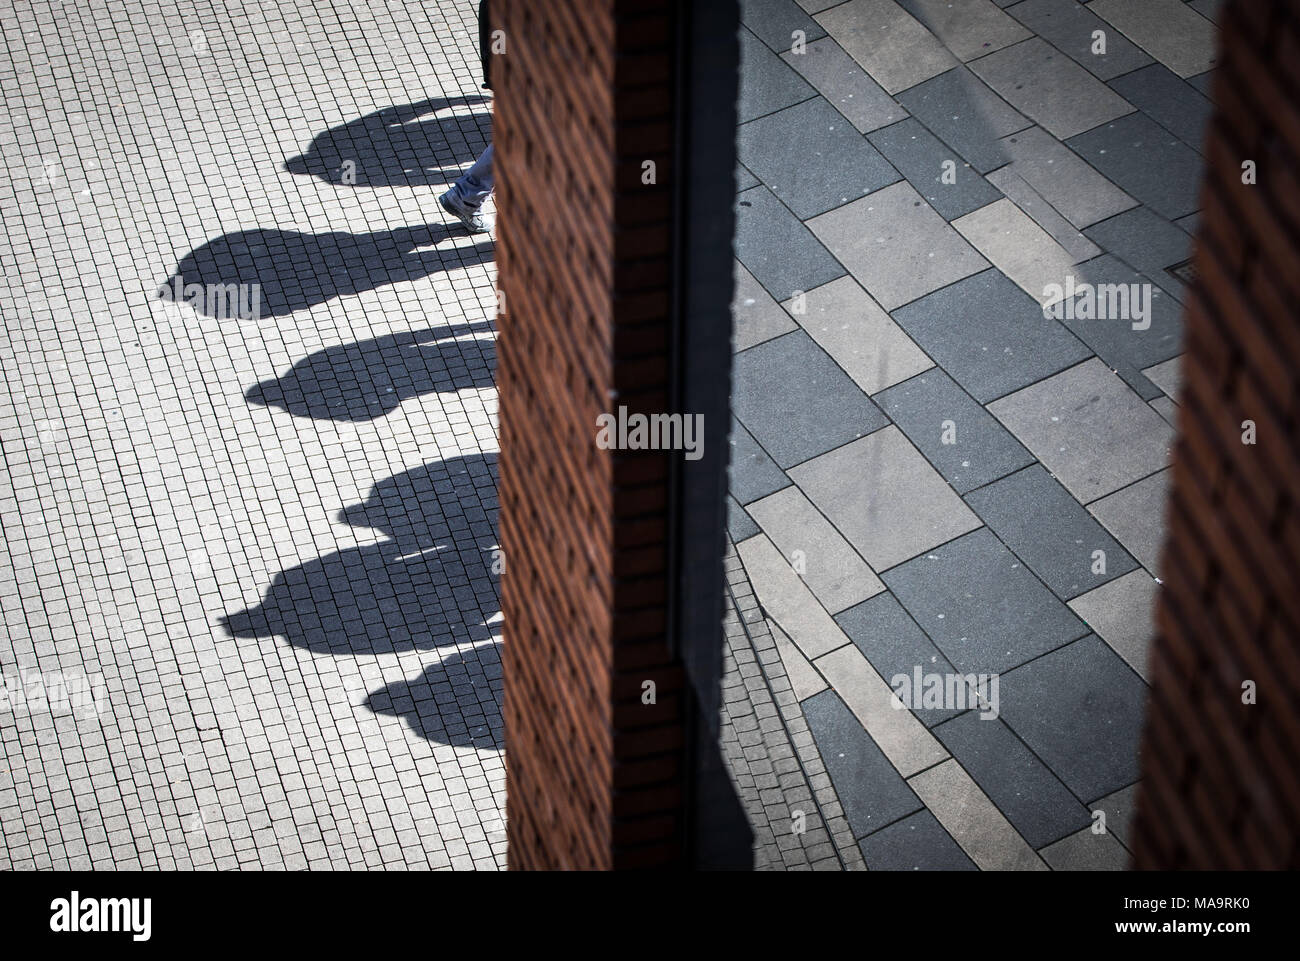 31 März 2018, Deutschland, Wiesbaden: Die mittagssonne Casting Shadows (L) von einer Gruppe von Bauarbeitern auf dem Beton vor einem Einkaufszentrum in der Innenstadt von Wiesbaden. Ein weiterer Teil der Plaza des Einkaufszentrums wird durch die Glasscheibe auf der rechten wider. Foto: Frank Rumpenhorst/dpa Stockfoto